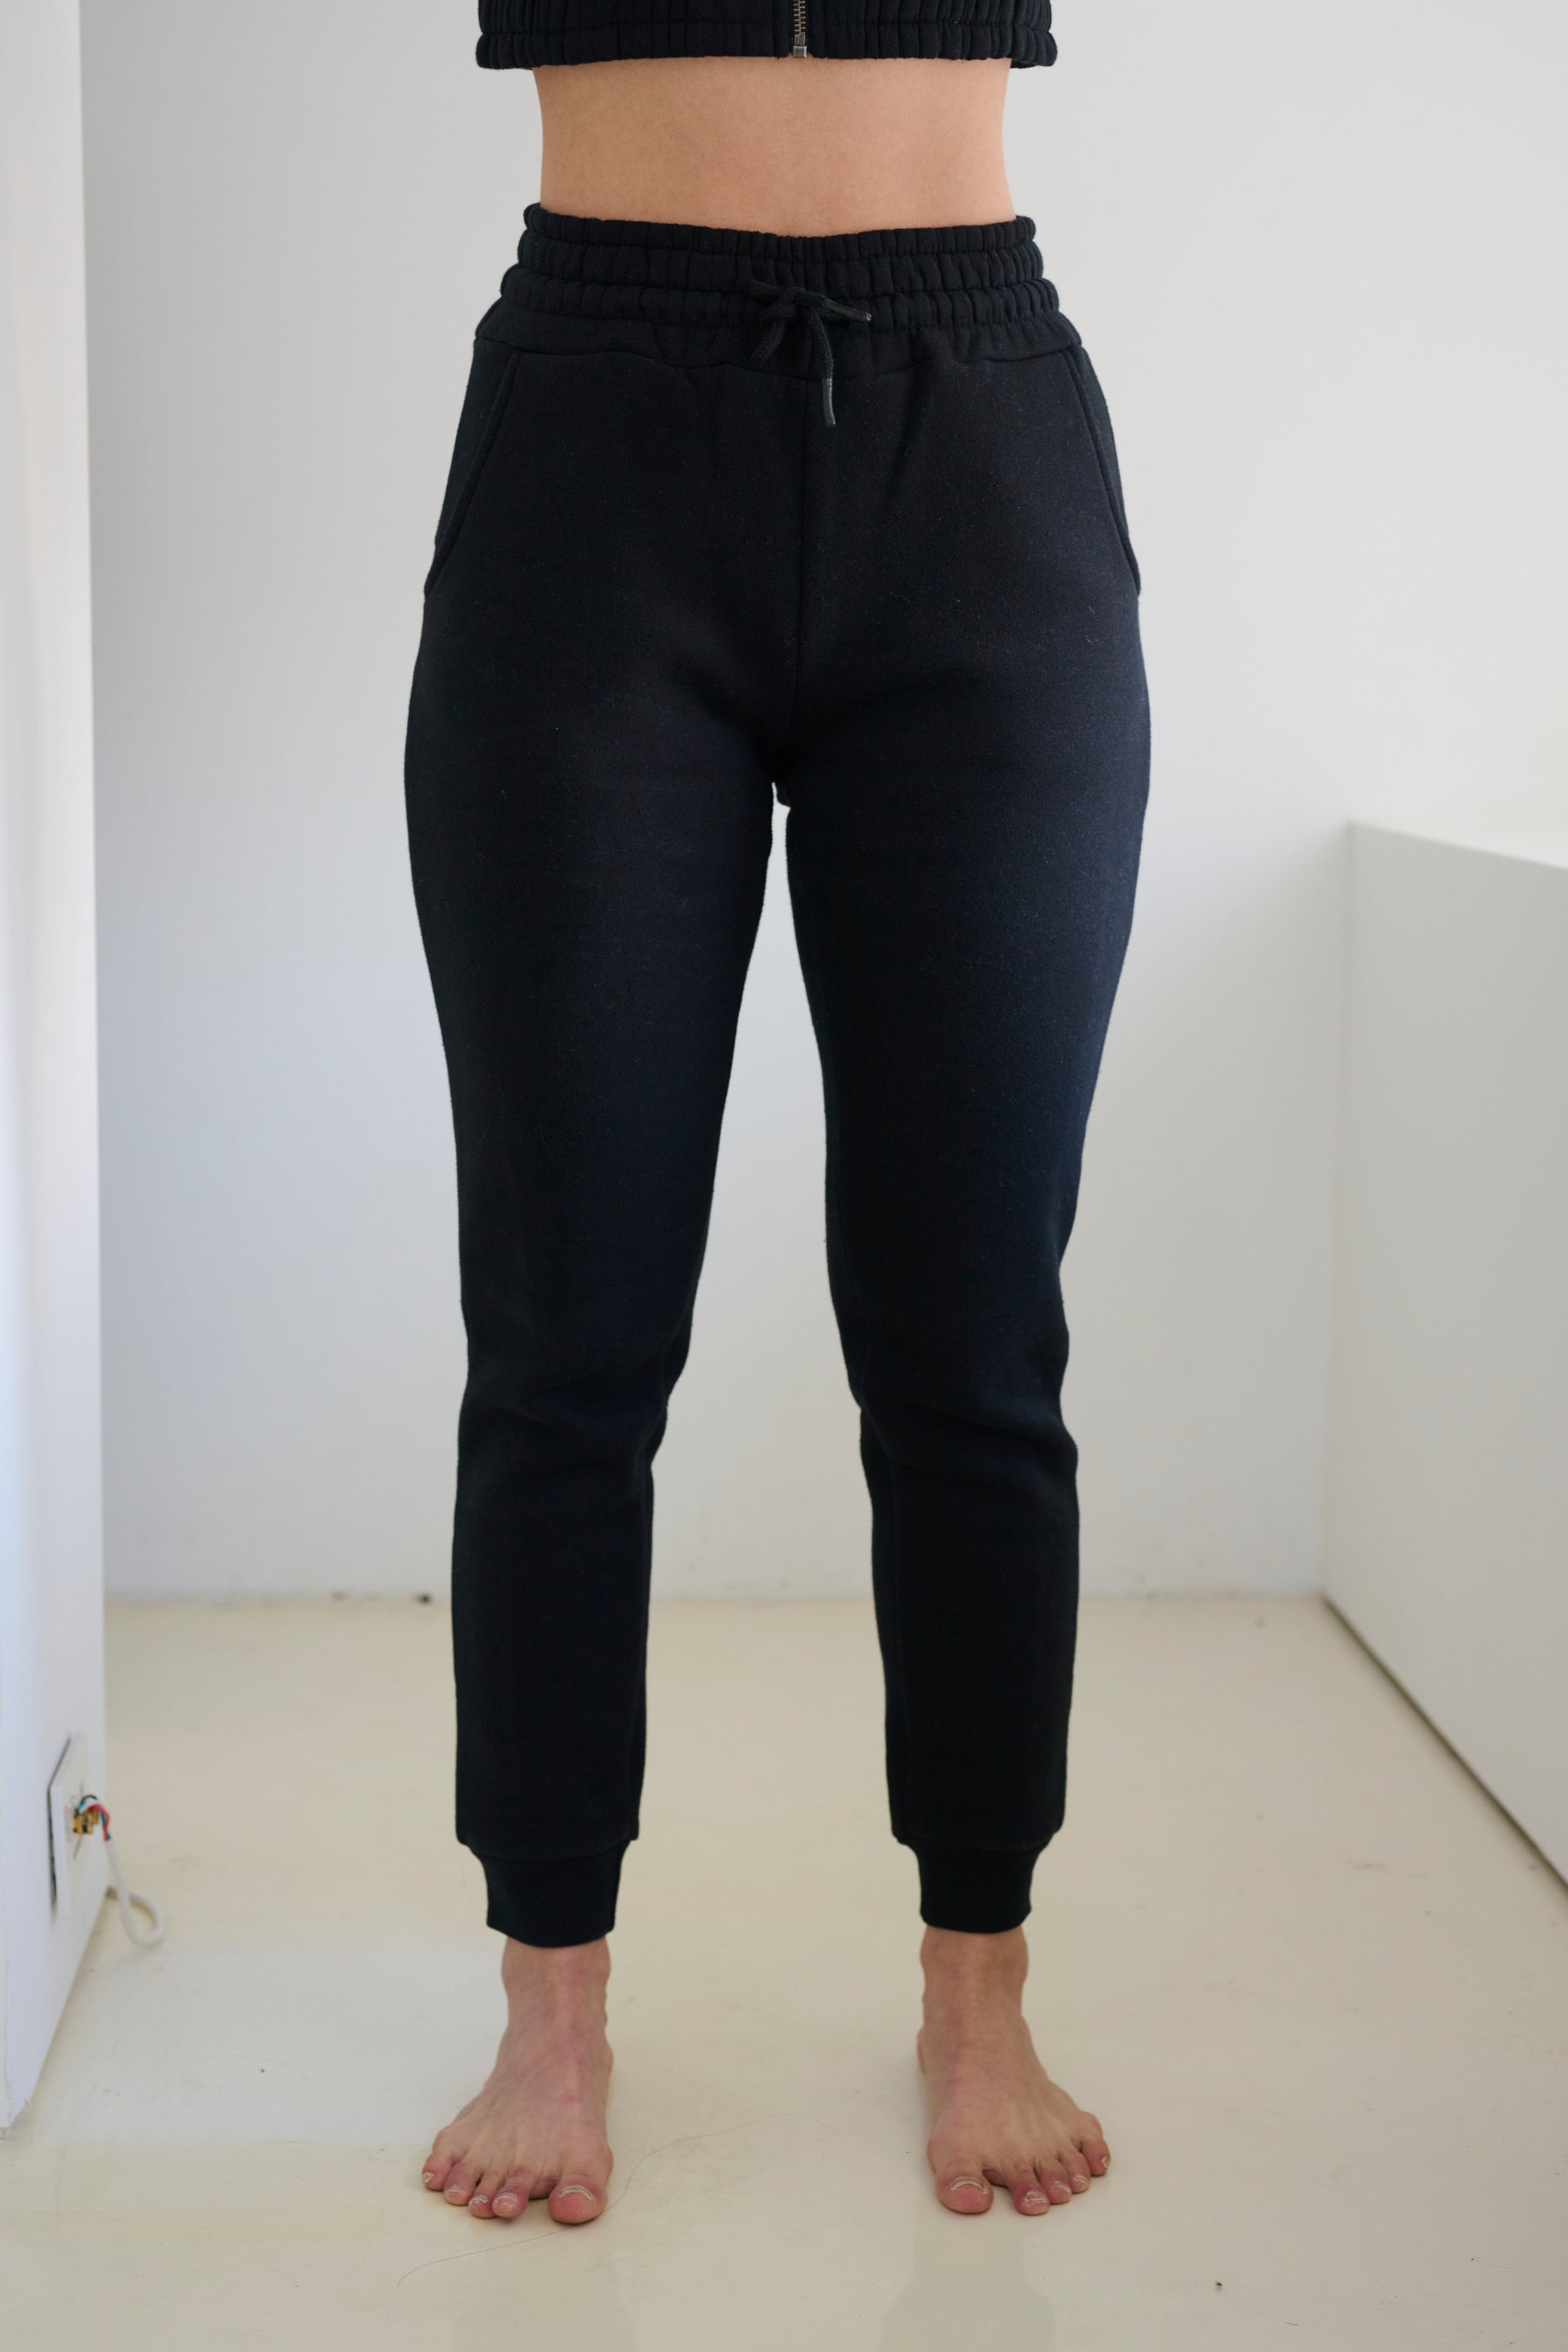 BAM Sweatpants for Women - Black Plain Cotton Pants - Slim Fit